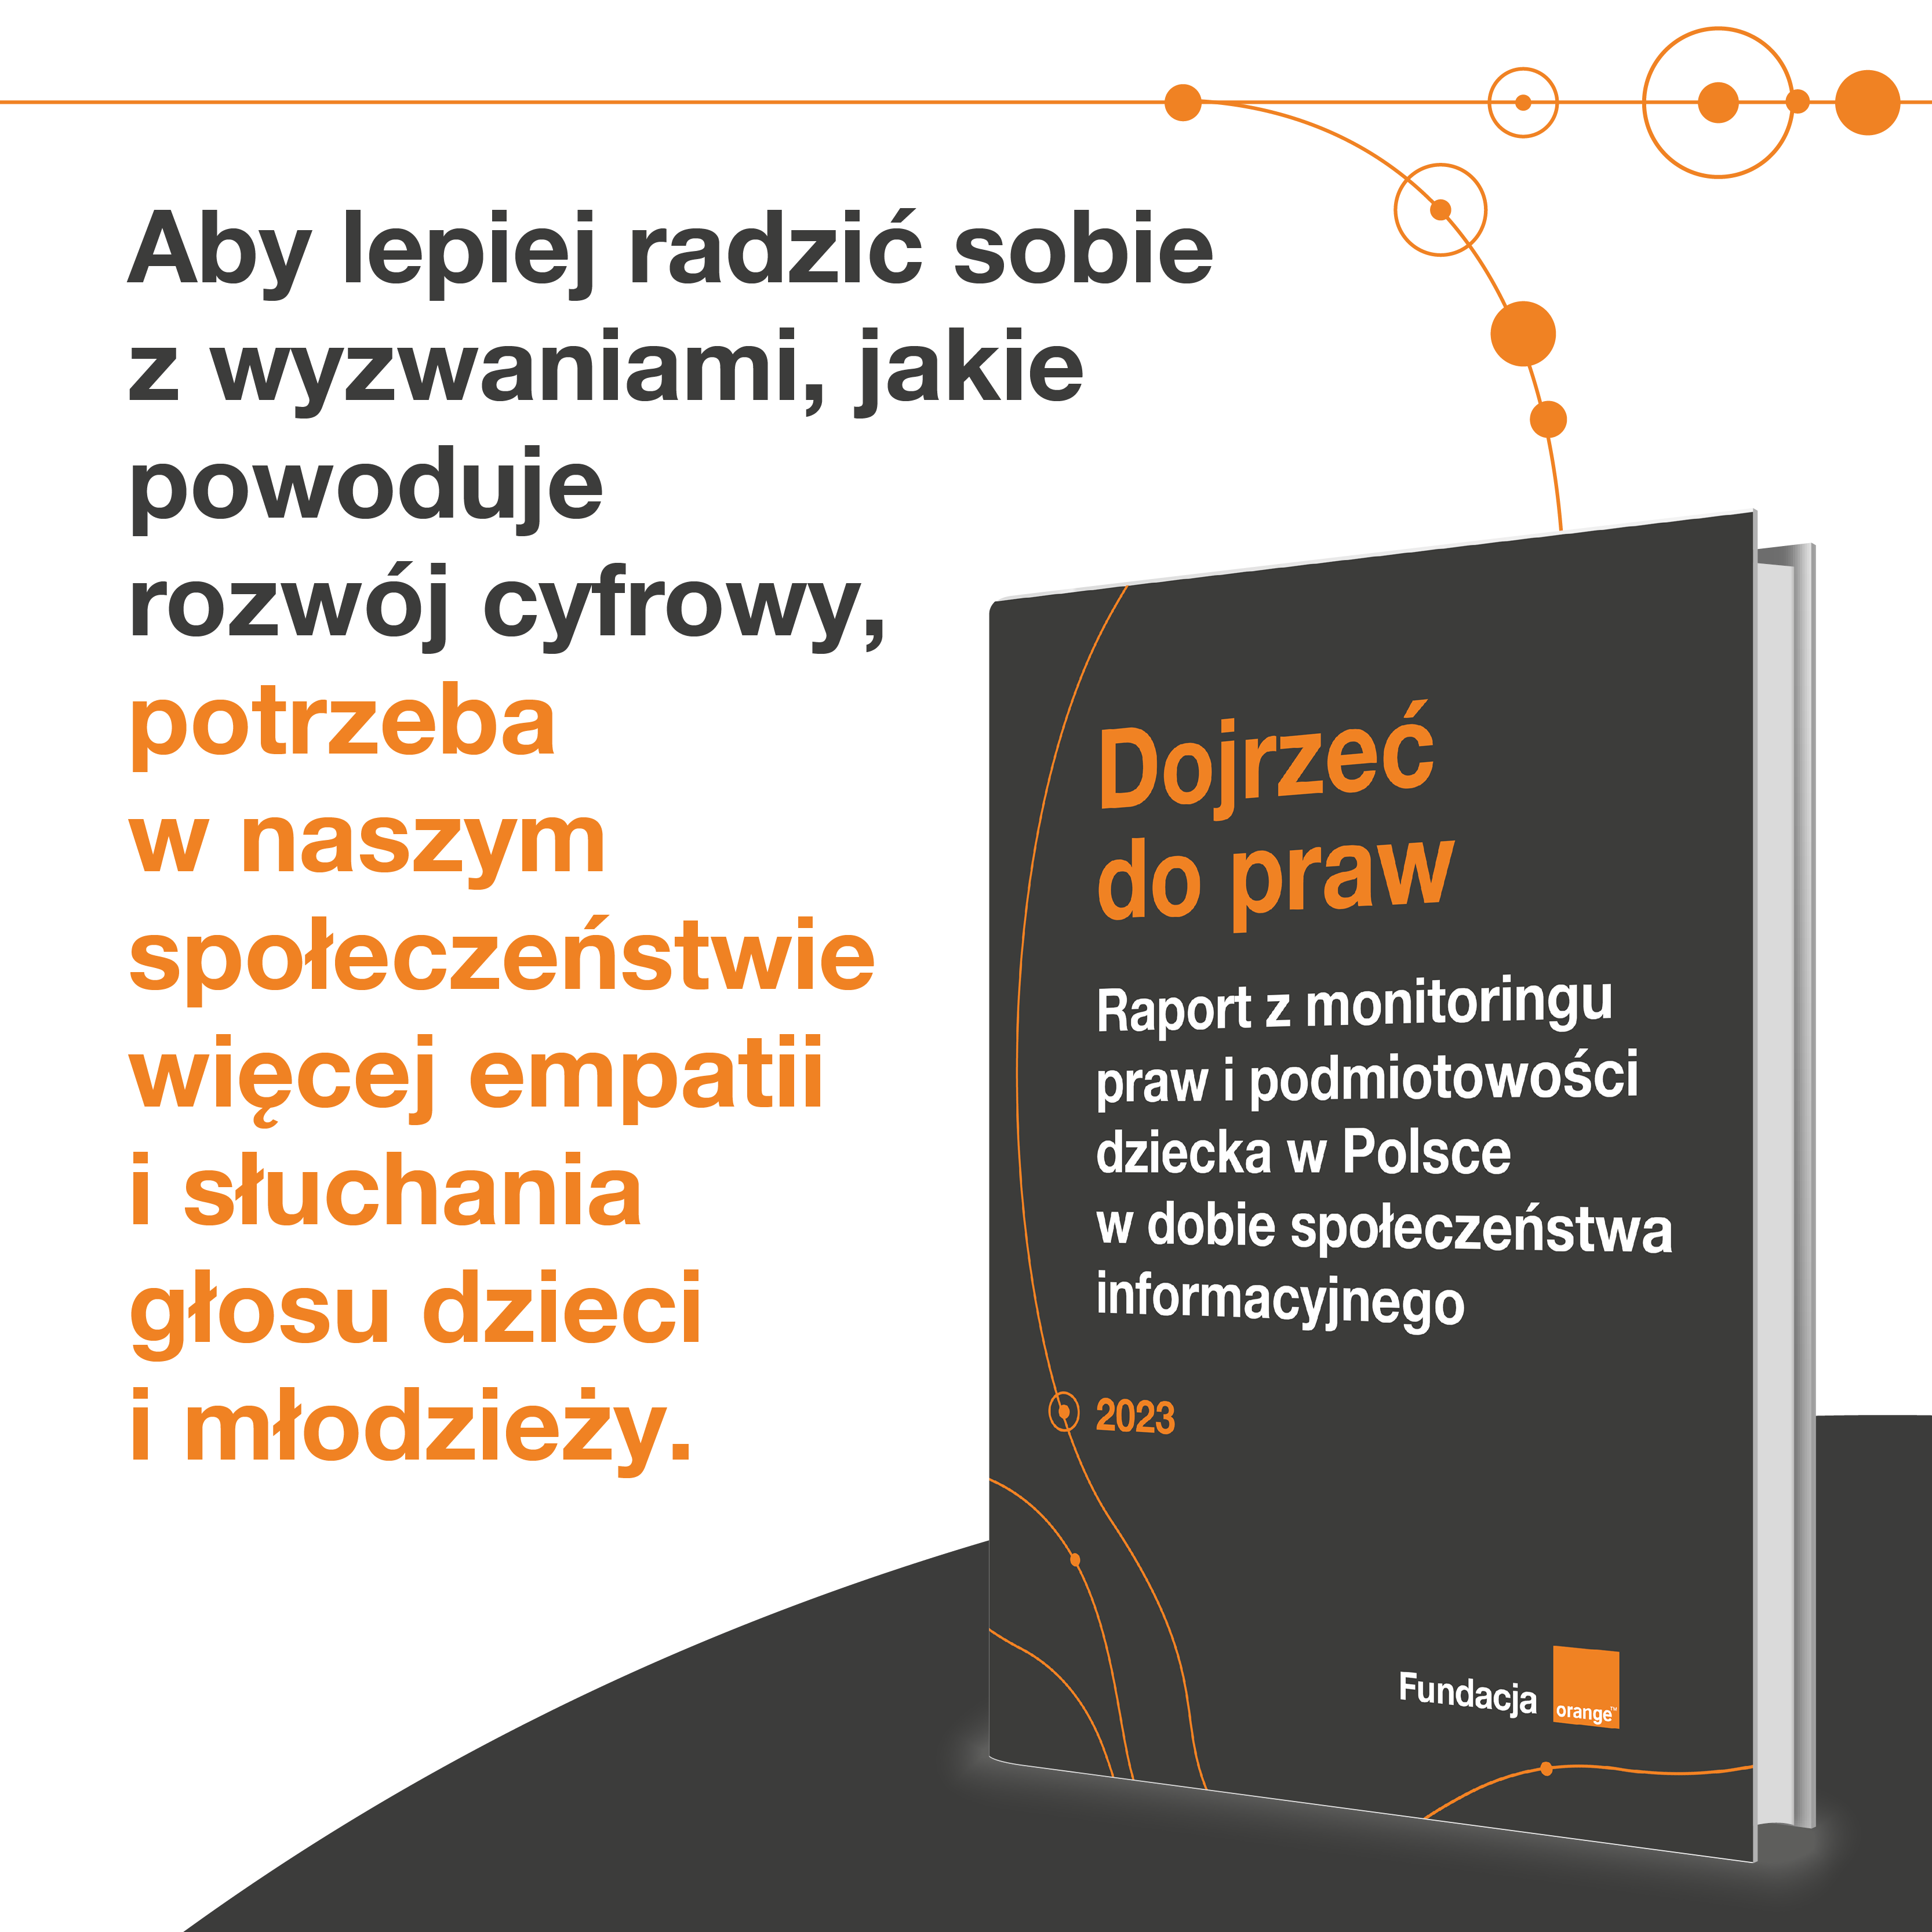 Raport-Dojrzec-do-praw_GLOWNY-WNIOSEK_800x800.png